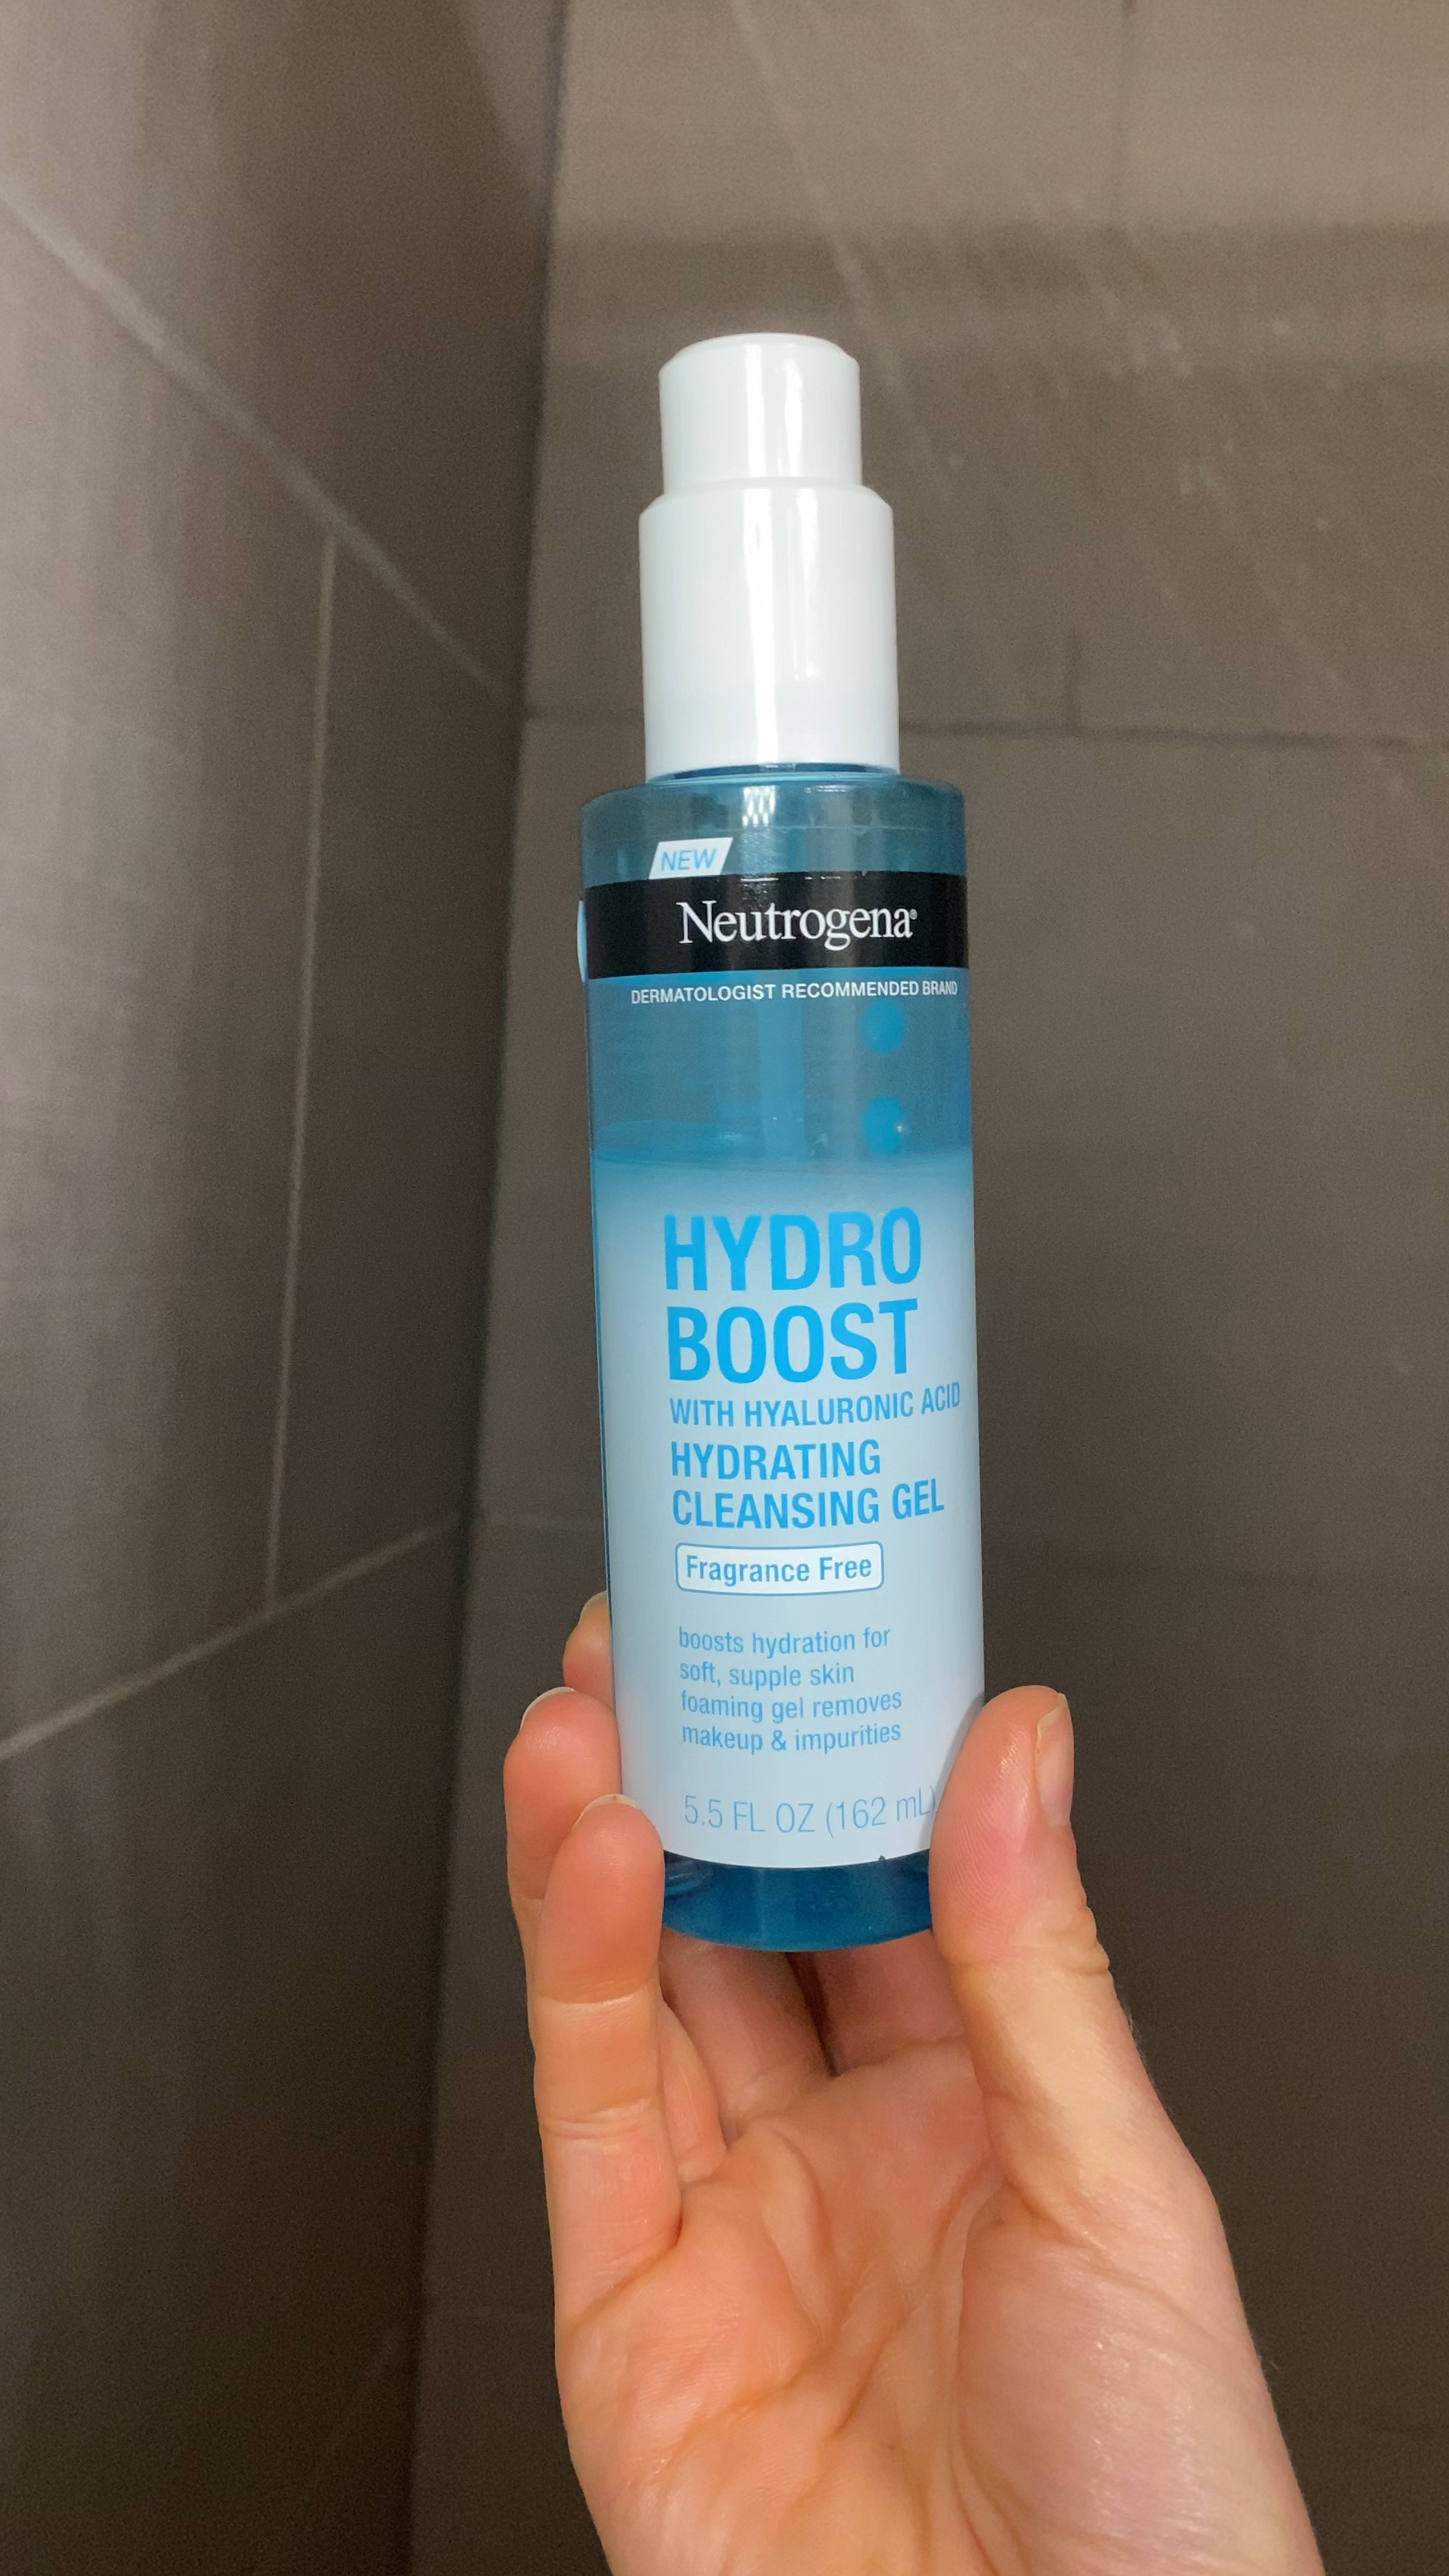 Neutrogena Hydro Boost Fragrance-Free Hydrating Cleansing Gel